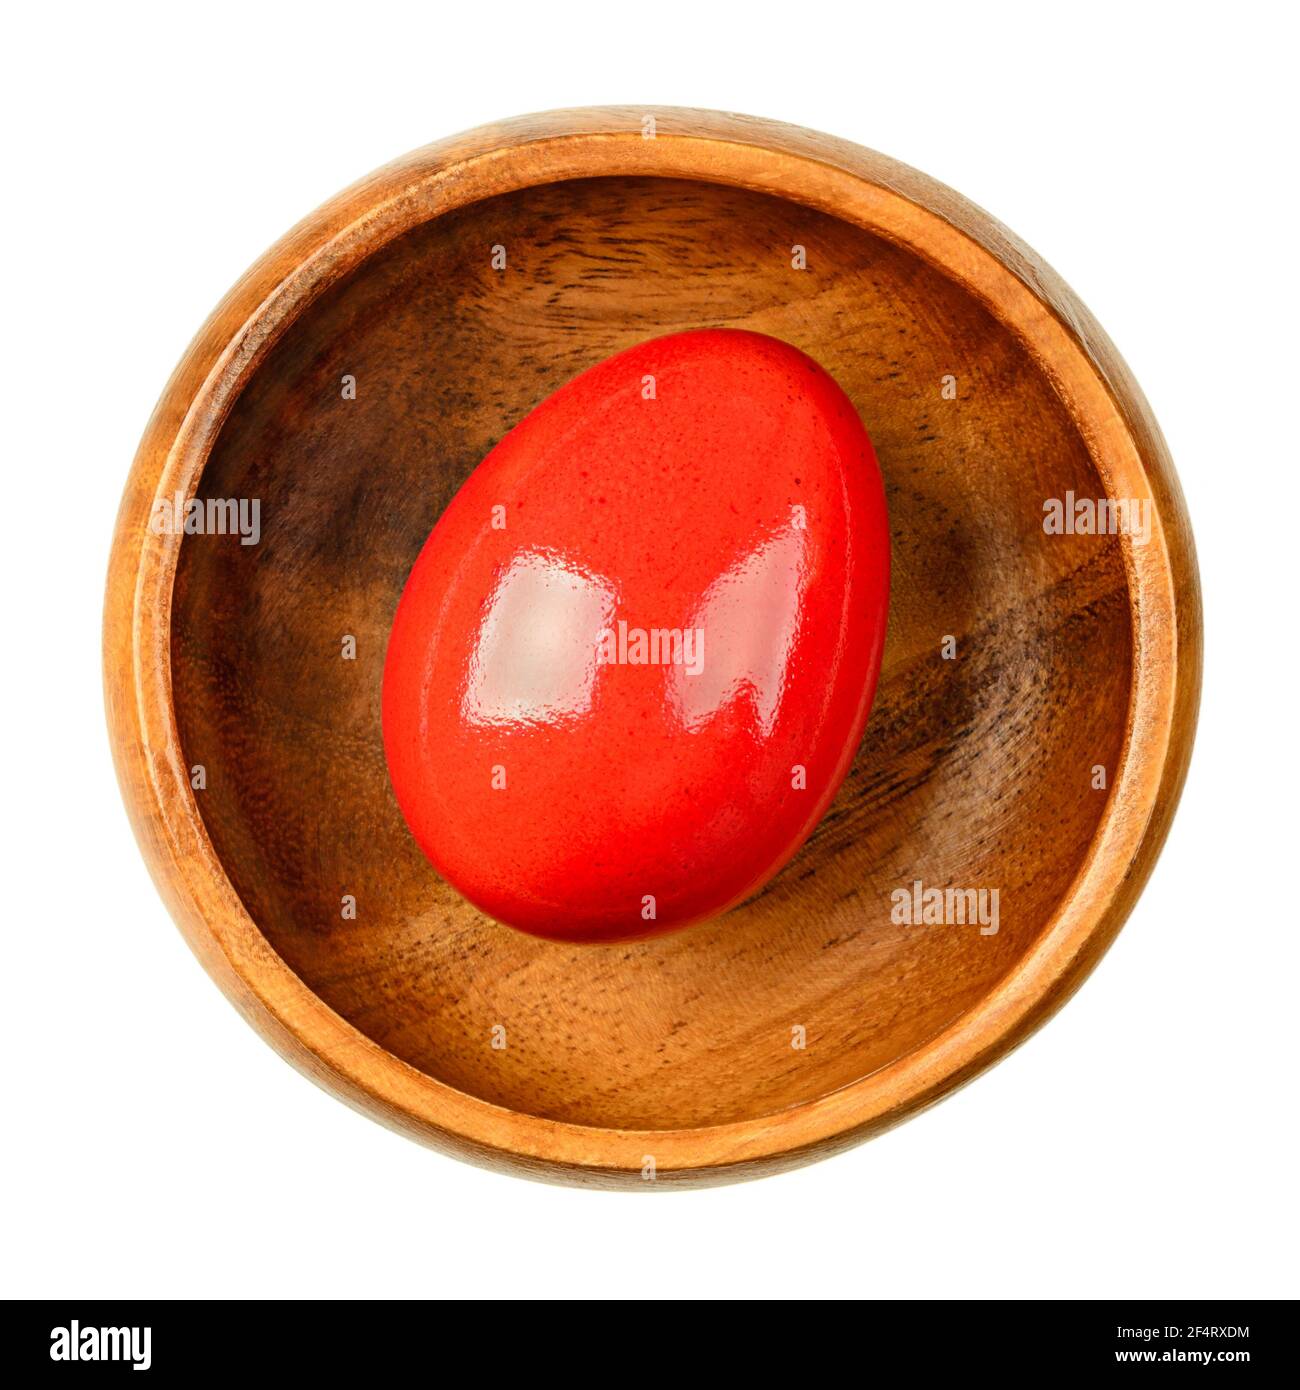 Huevo de Pascua teñido rojo en un tazón de madera. Huevo de pollo teñido de colores, hervido. Huevo pascual comestible, listo para comer, o para una caza de huevos de Pascua. Primer plano. Foto de stock